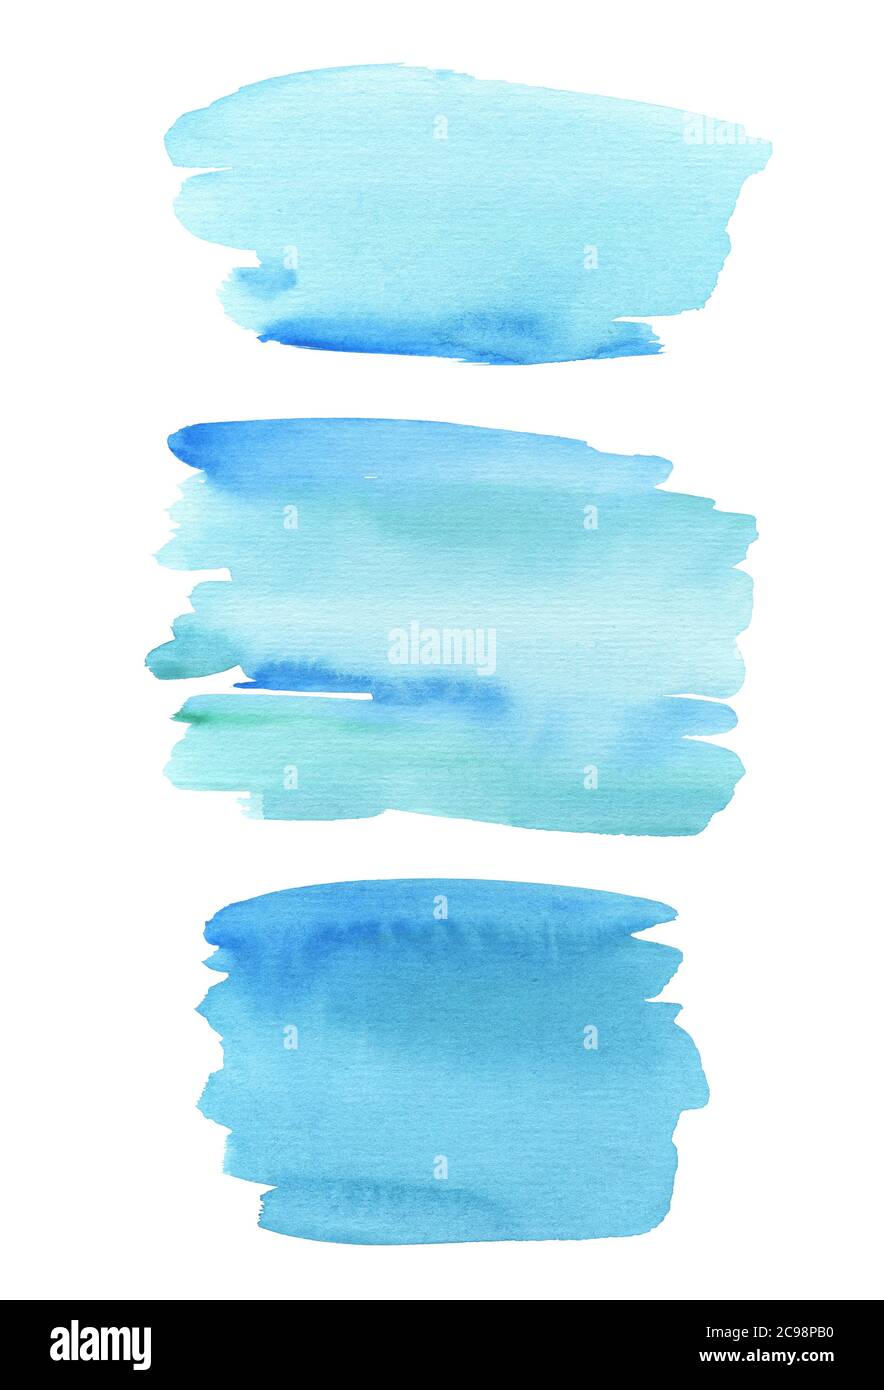 Aquarelle trait abstrait, fond bleu, texture peinte à la main, aquarelles. Design pour arrière-plans, fonds d'écran, couvertures et emballages Banque D'Images